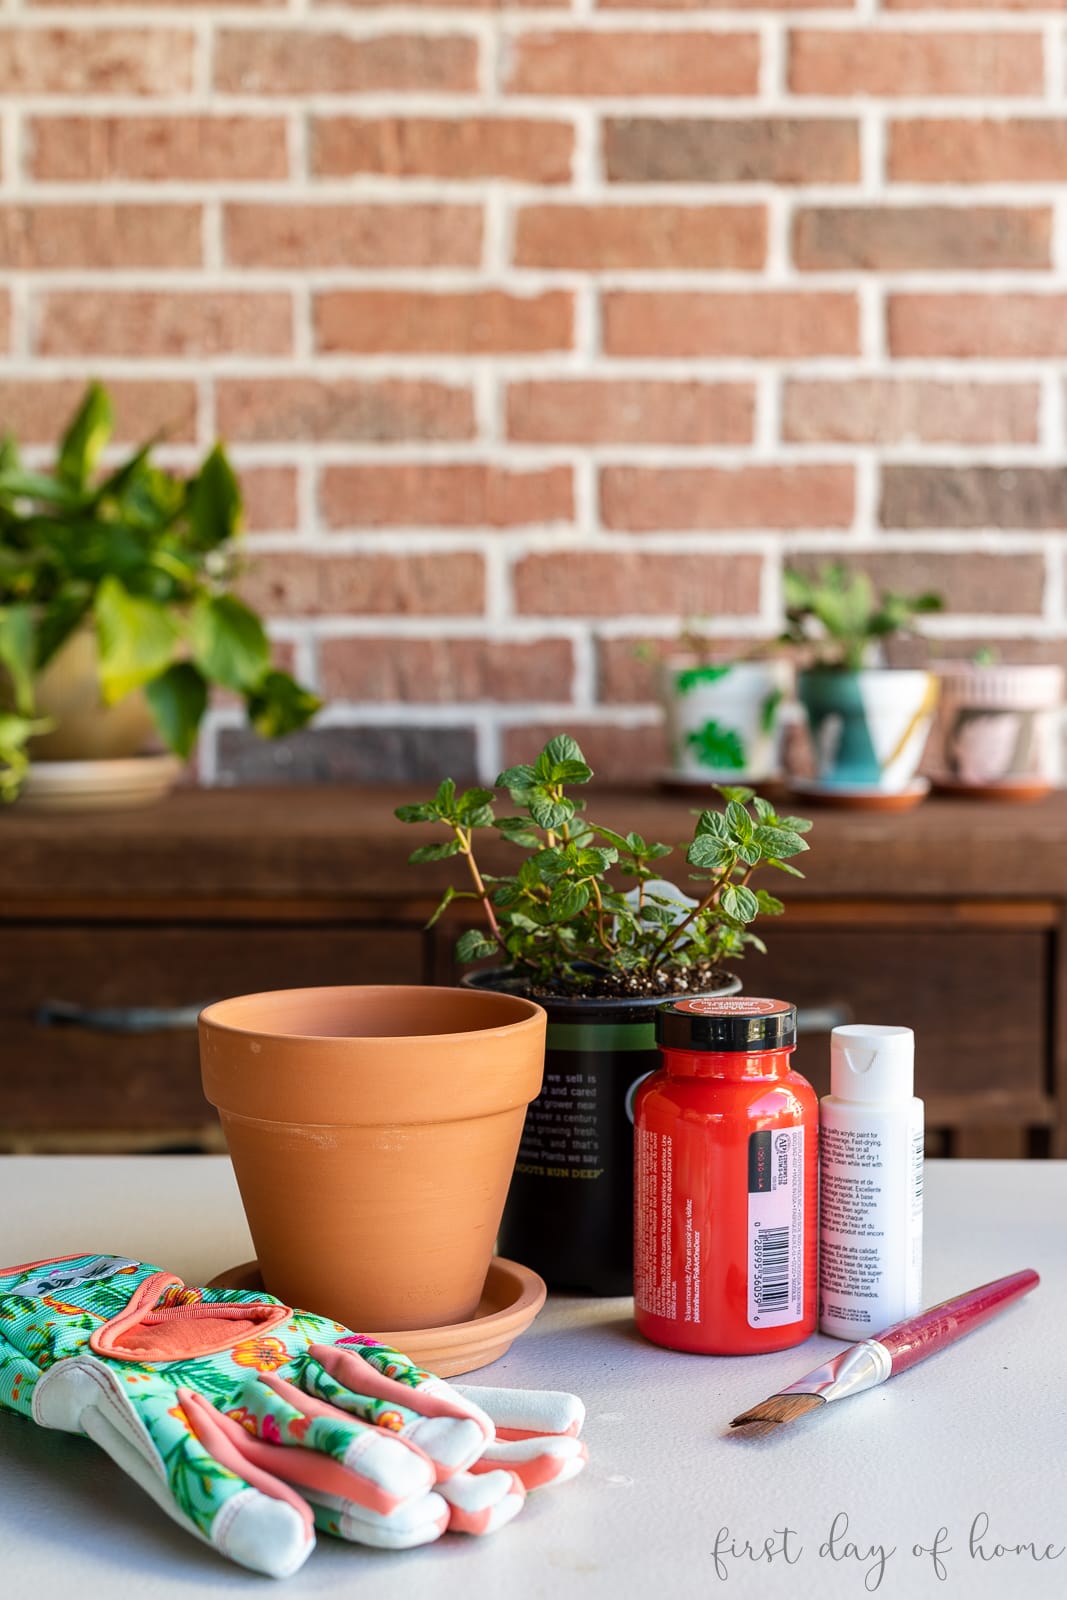 Fingerprint flower pot supplies, including terracotta pot, acrylic paint, plant, gloves, and paintbrush